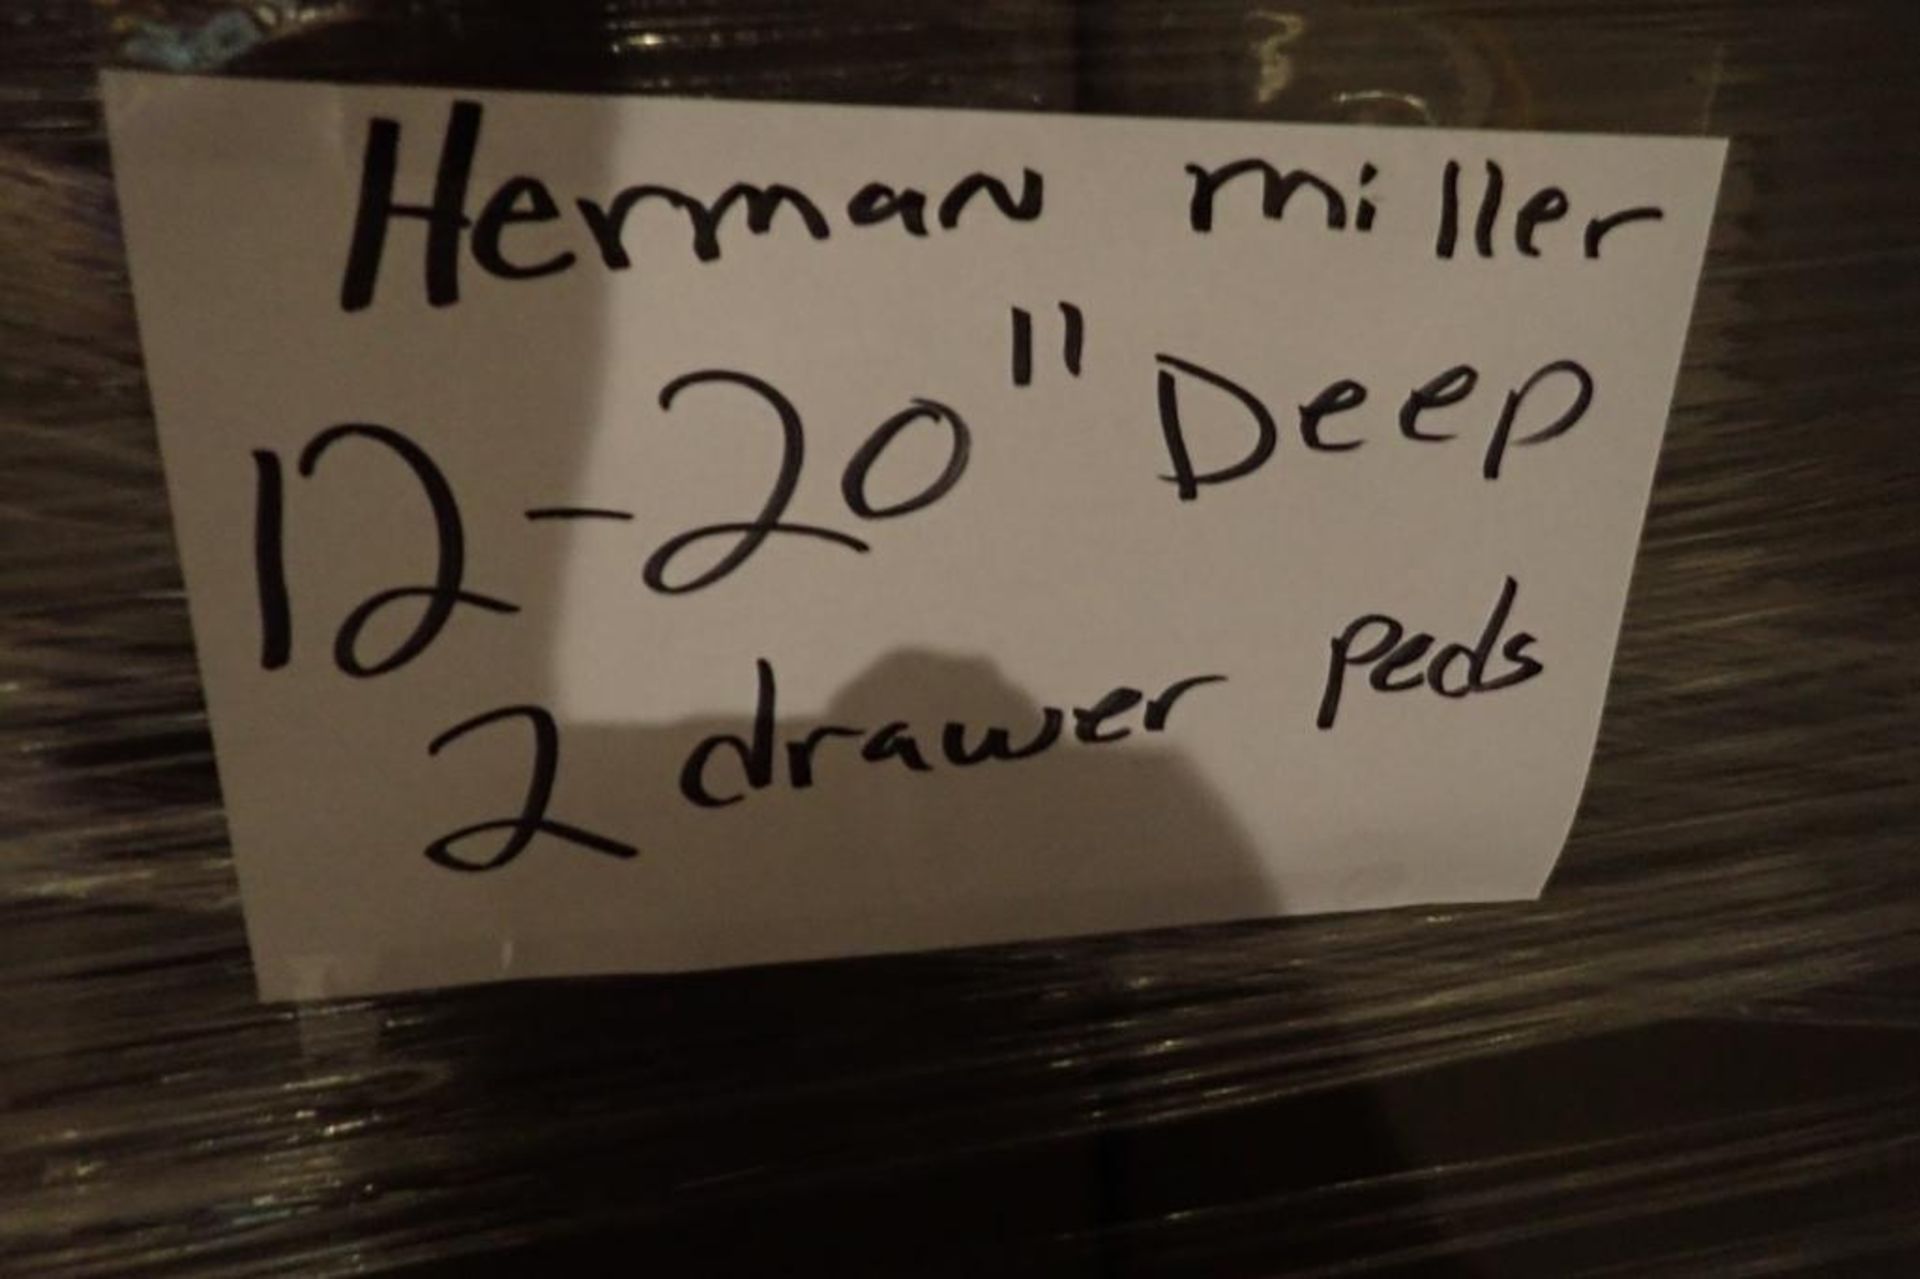 Herman Miller 2-drawer filing pedestal - Image 5 of 5